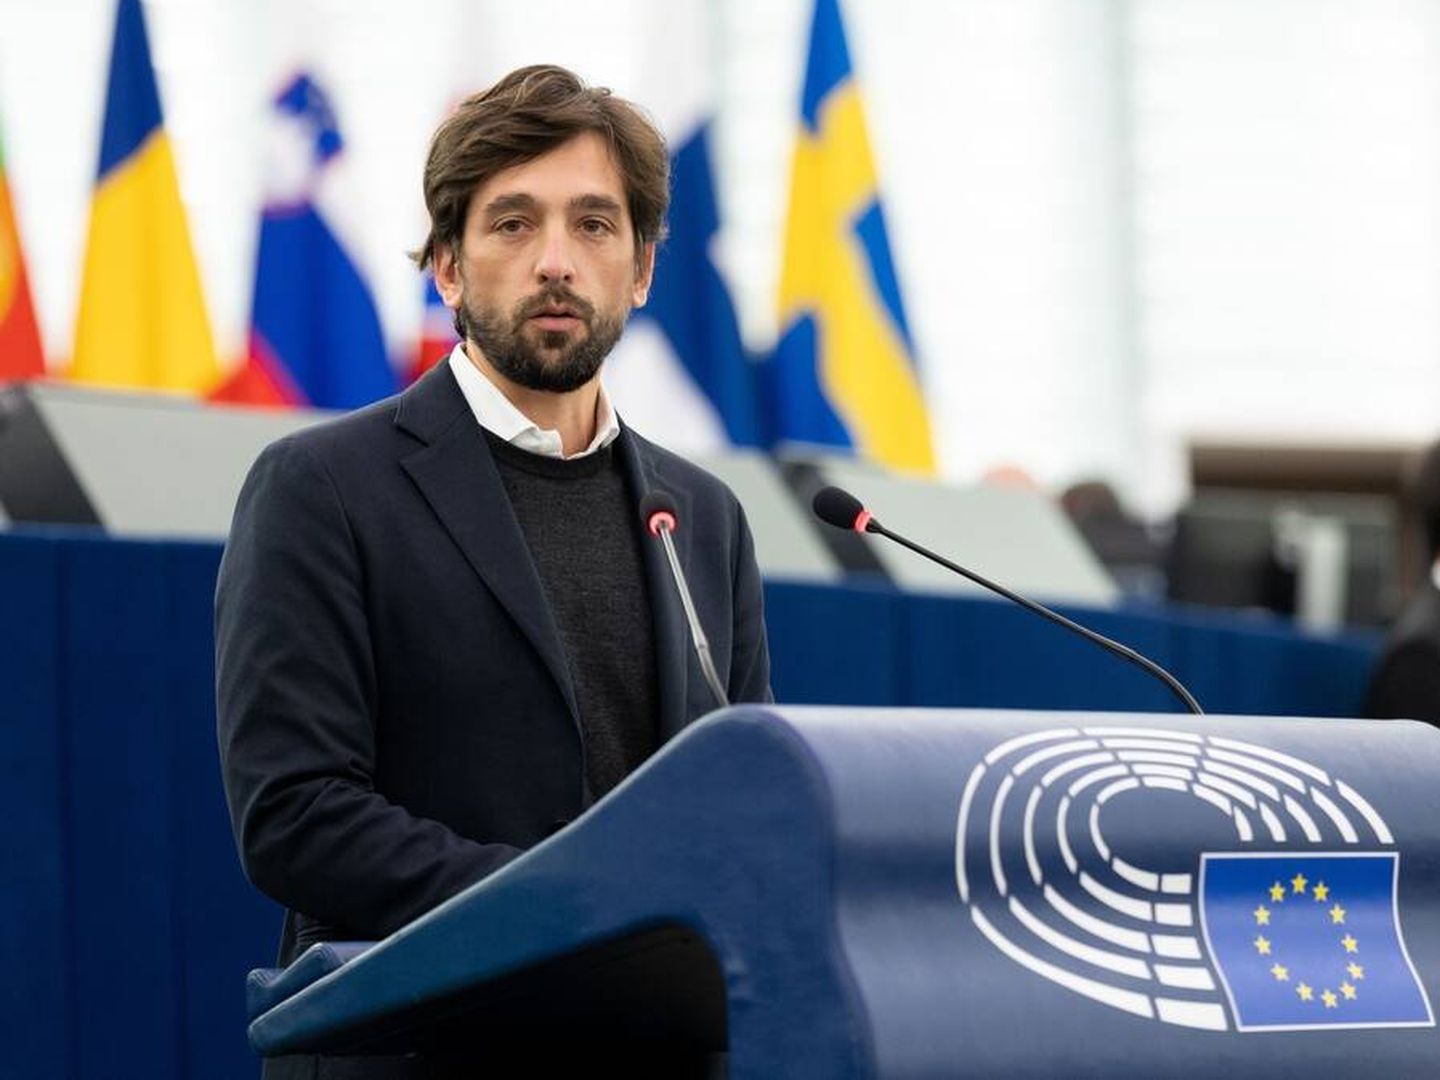 Adrián Vázquez Lázara, eurodiputado de Ciudadanos, durante su intervención. (Parlamento Europeo)